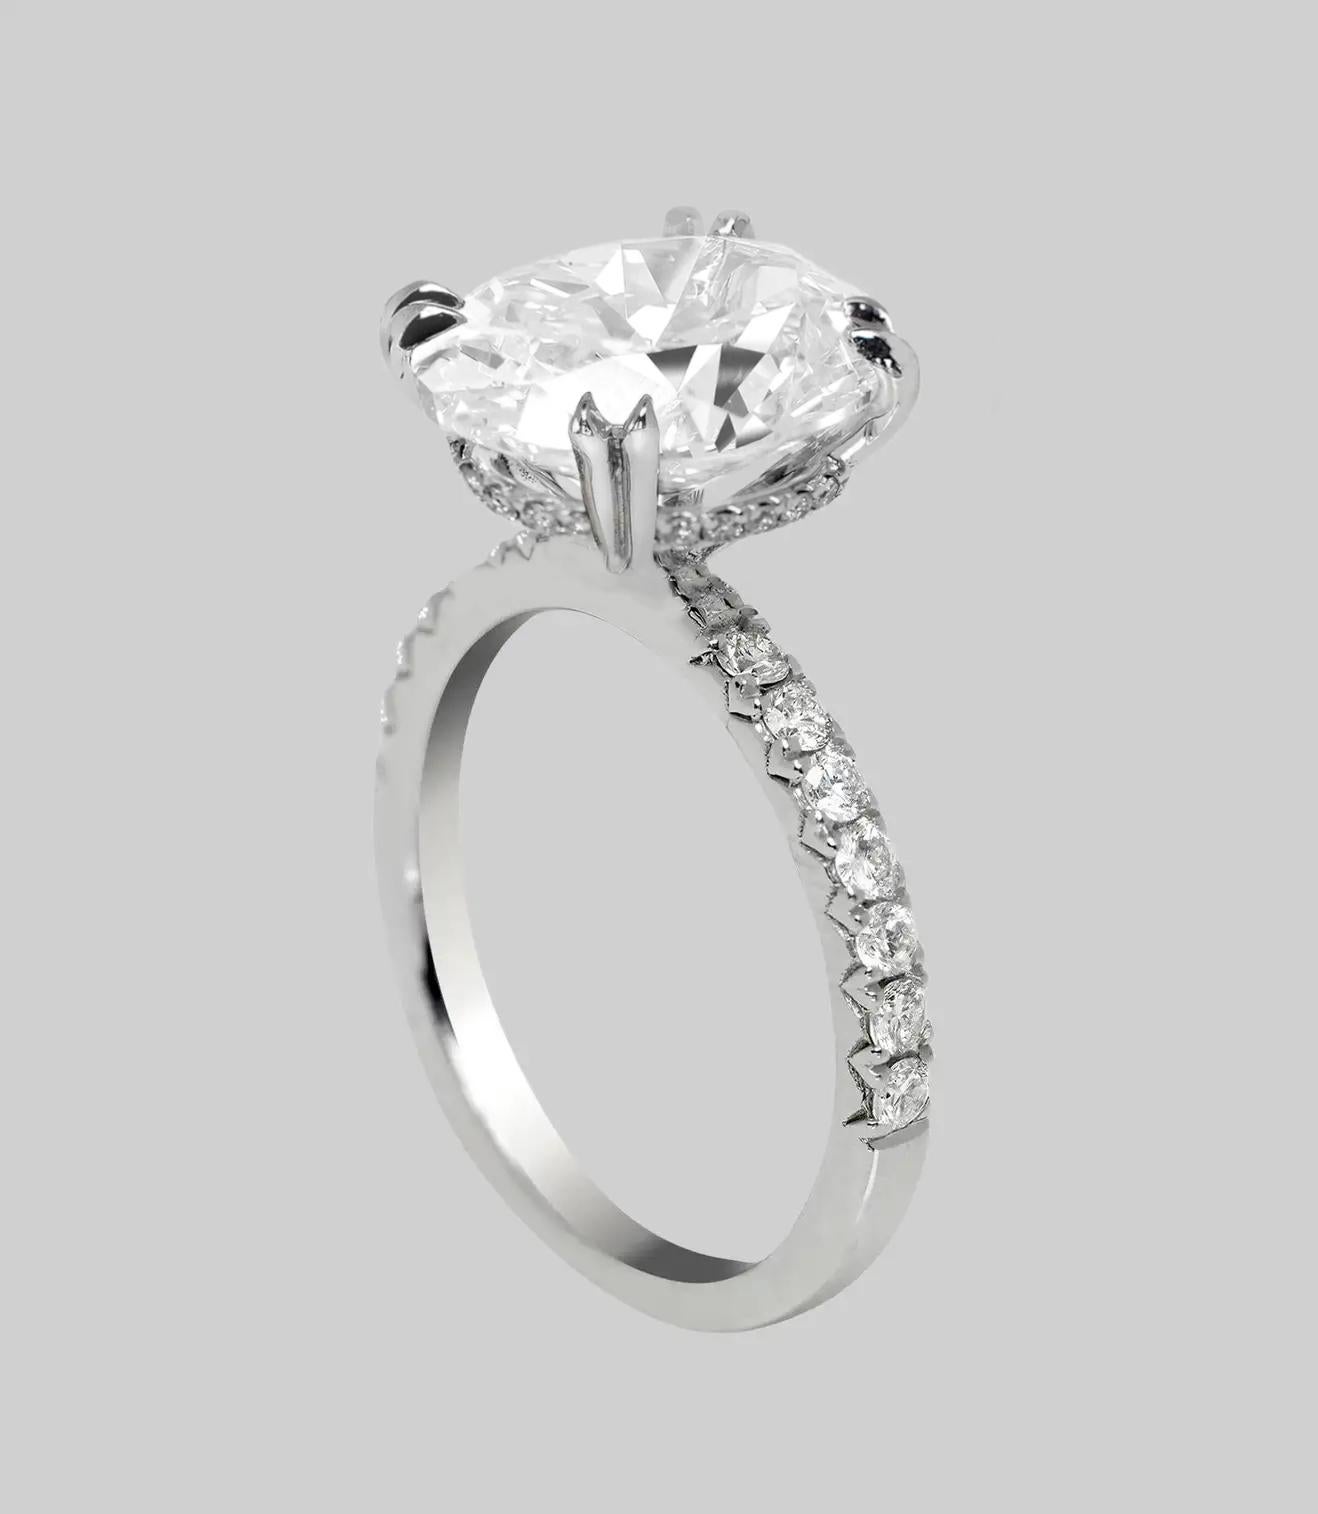 Le diamant a une apparence étonnante avec un éclat fascinant et vivant, et il est très à la mode avec sa forme ovale populaire et flatteuse. 

Avec son éclat vif, sa couleur blanche brillante et son apparence parfaitement nette, ce diamant est un